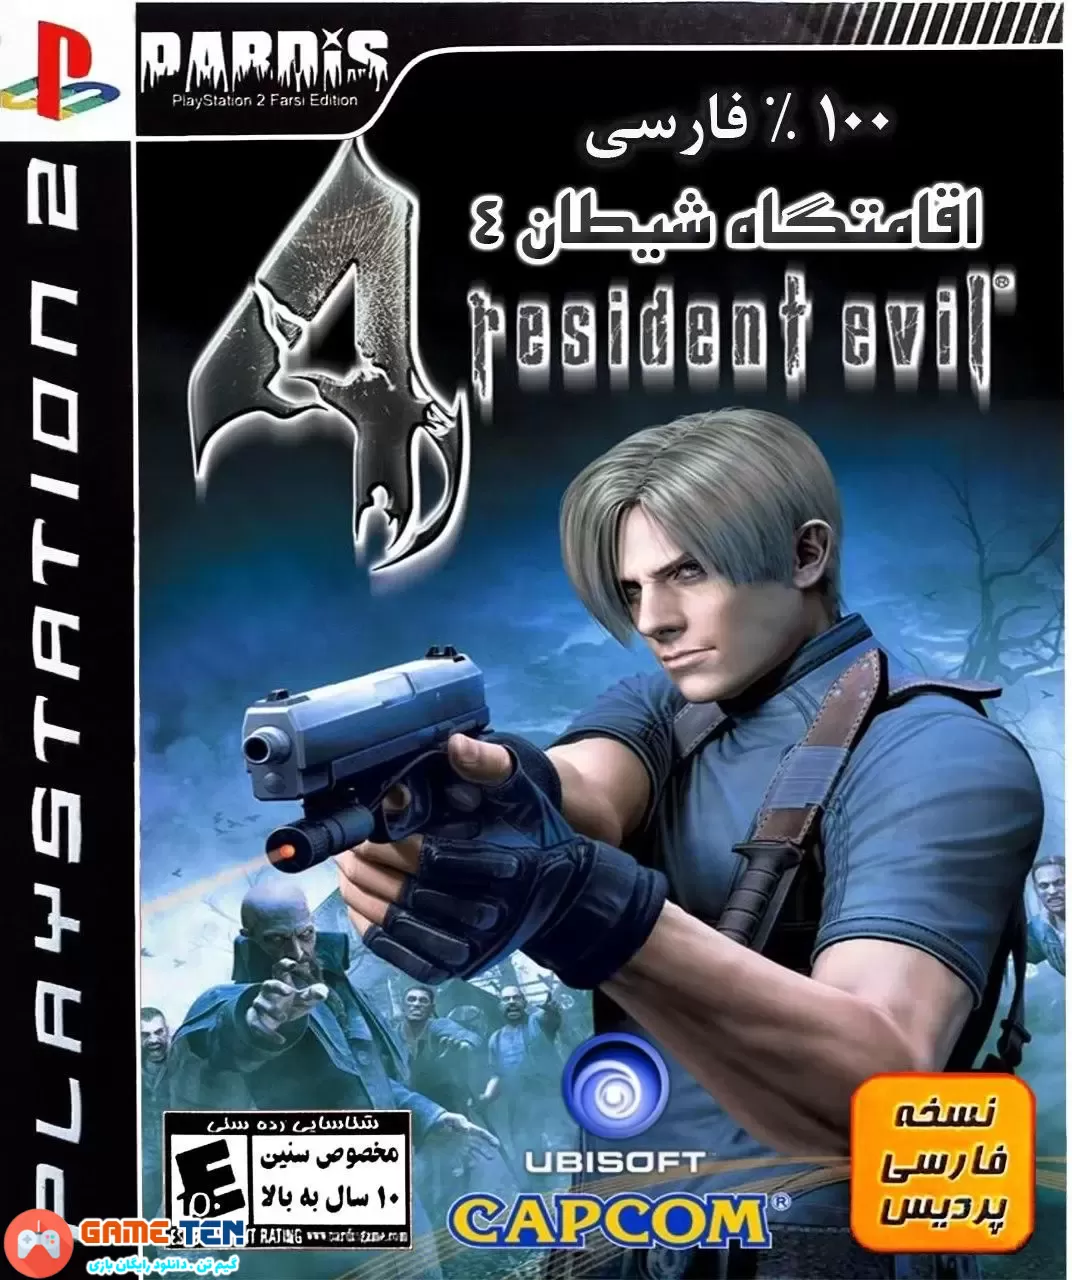 دانلود Resident Evil 4 - دوبله فارسی بازی شیطان مقیم 4